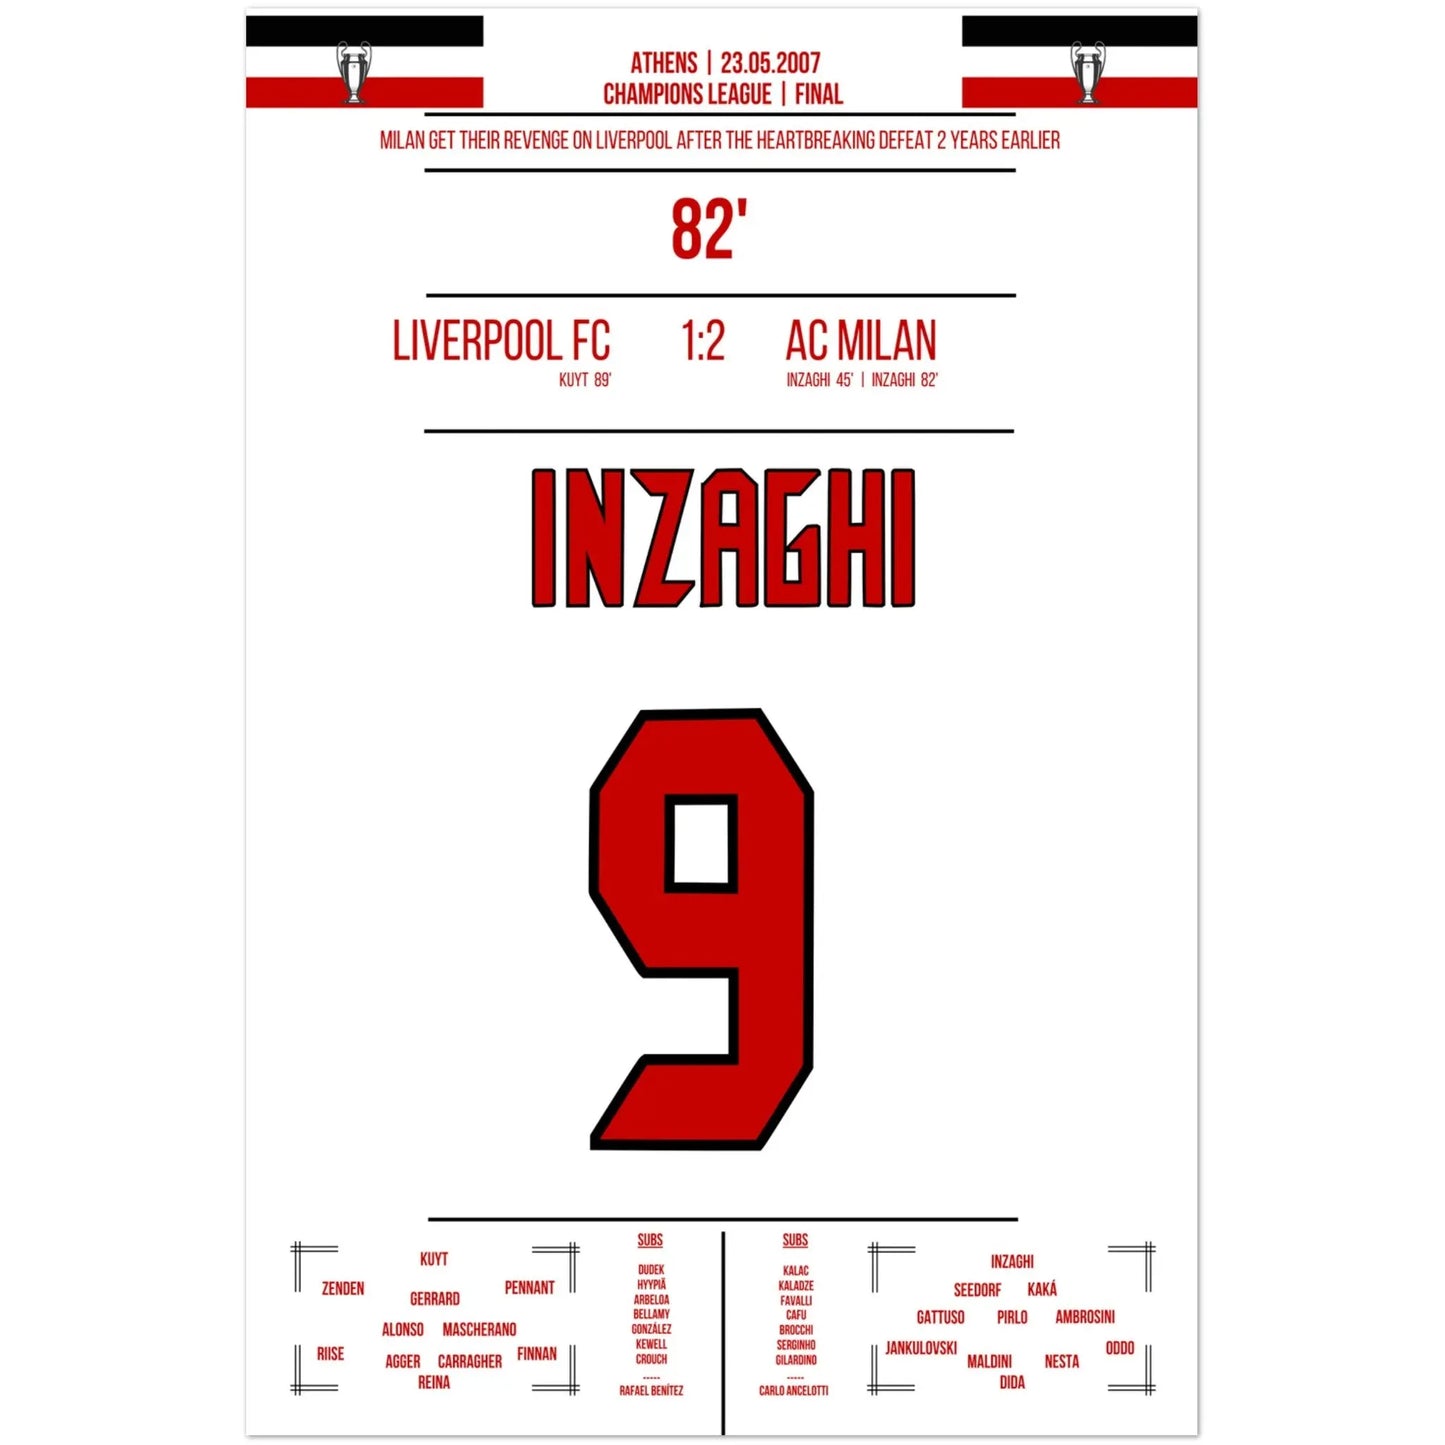 Doblete de Inzaghi en la final de la Liga de Campeones de 2007 contra el Liverpool